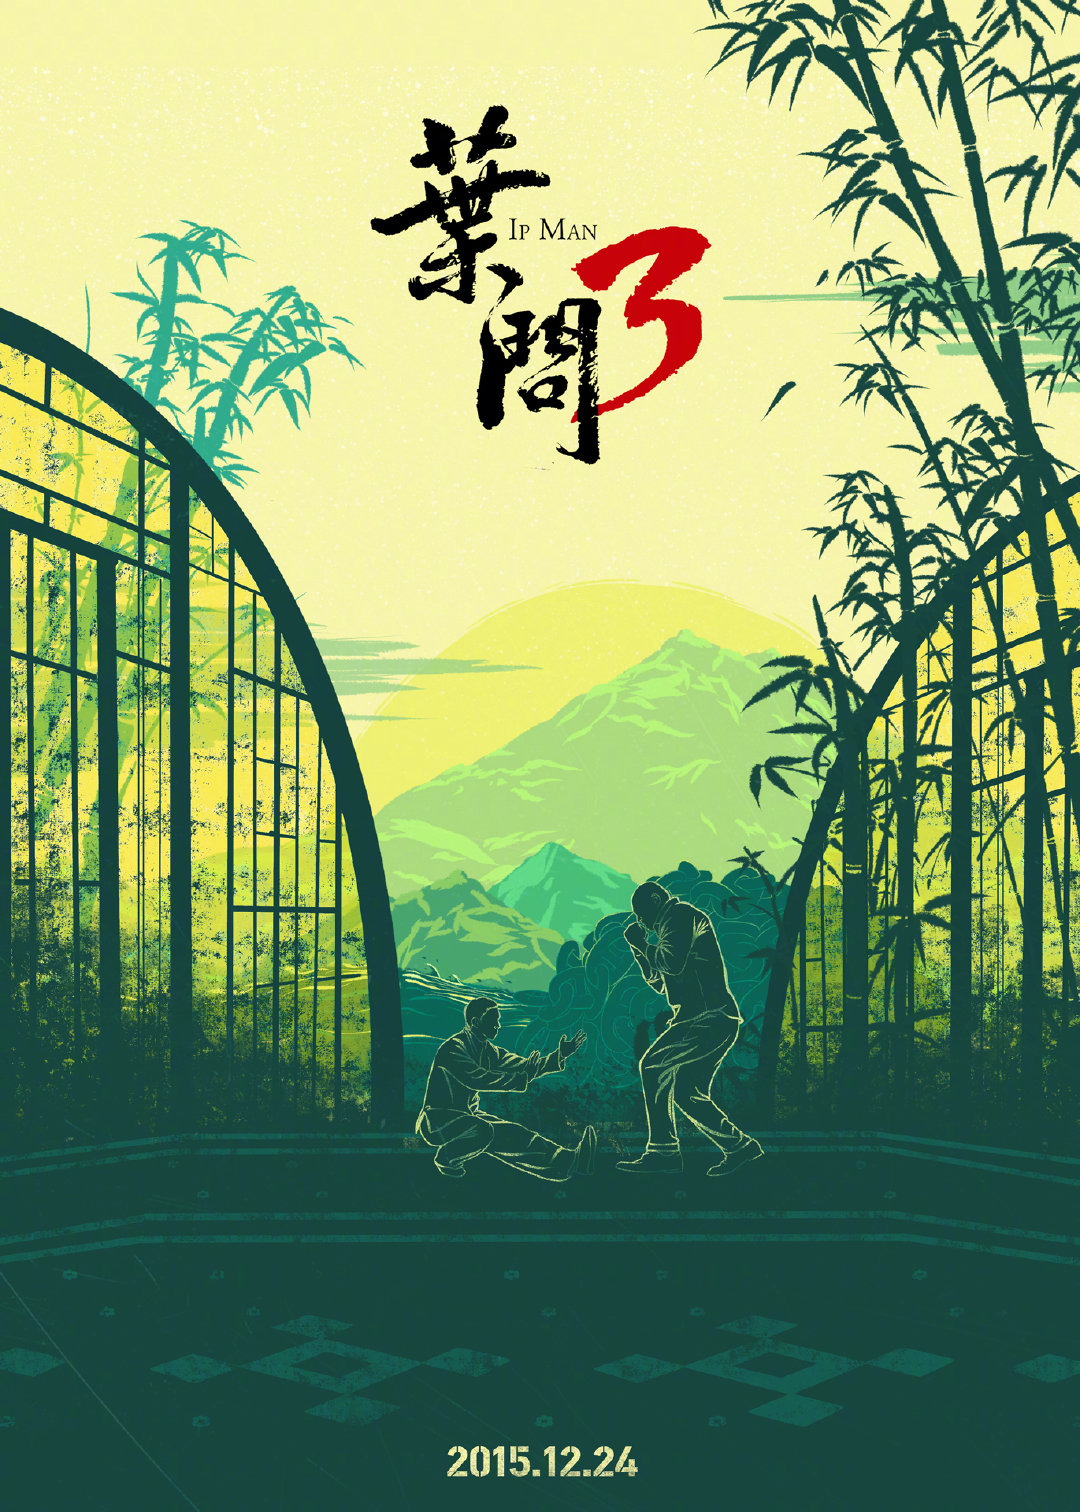 《叶问4》中国风纪念海报发布 票房达到5.2亿元